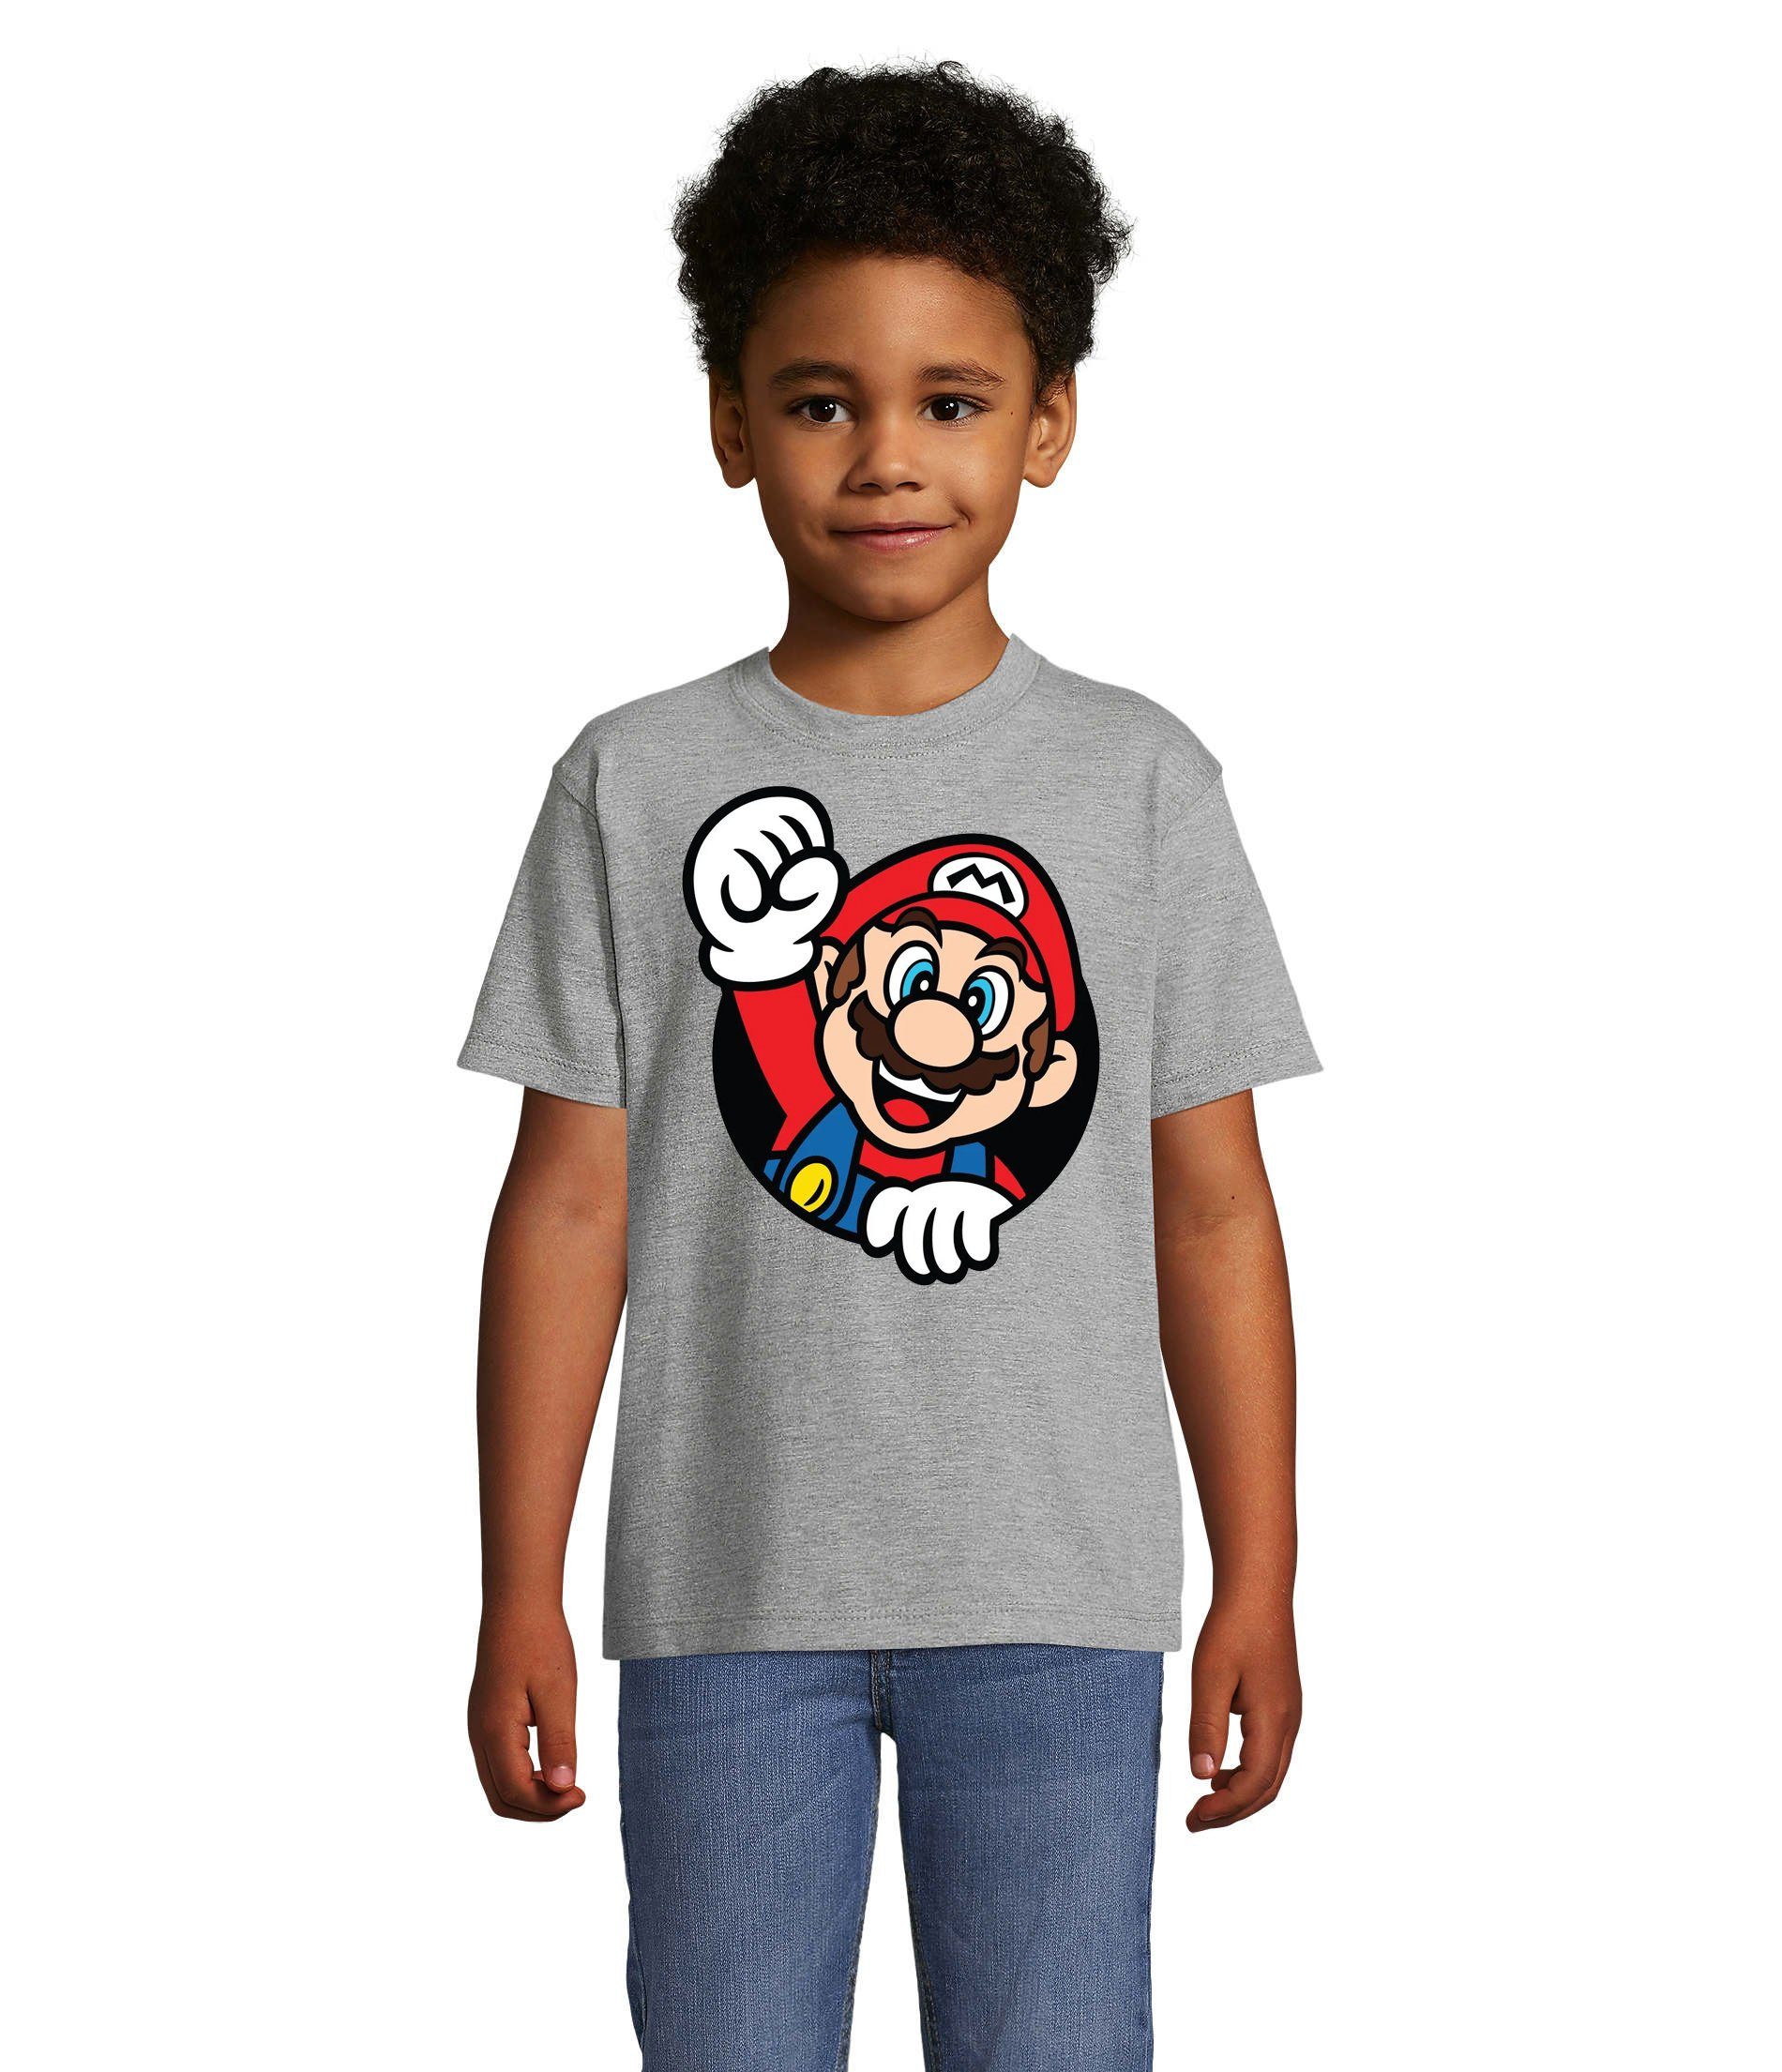 Blondie & Spiel Konsole Kinder Konsole Nintendo Gaming Brownie T-Shirt Super Nerd Grau Faust Mario